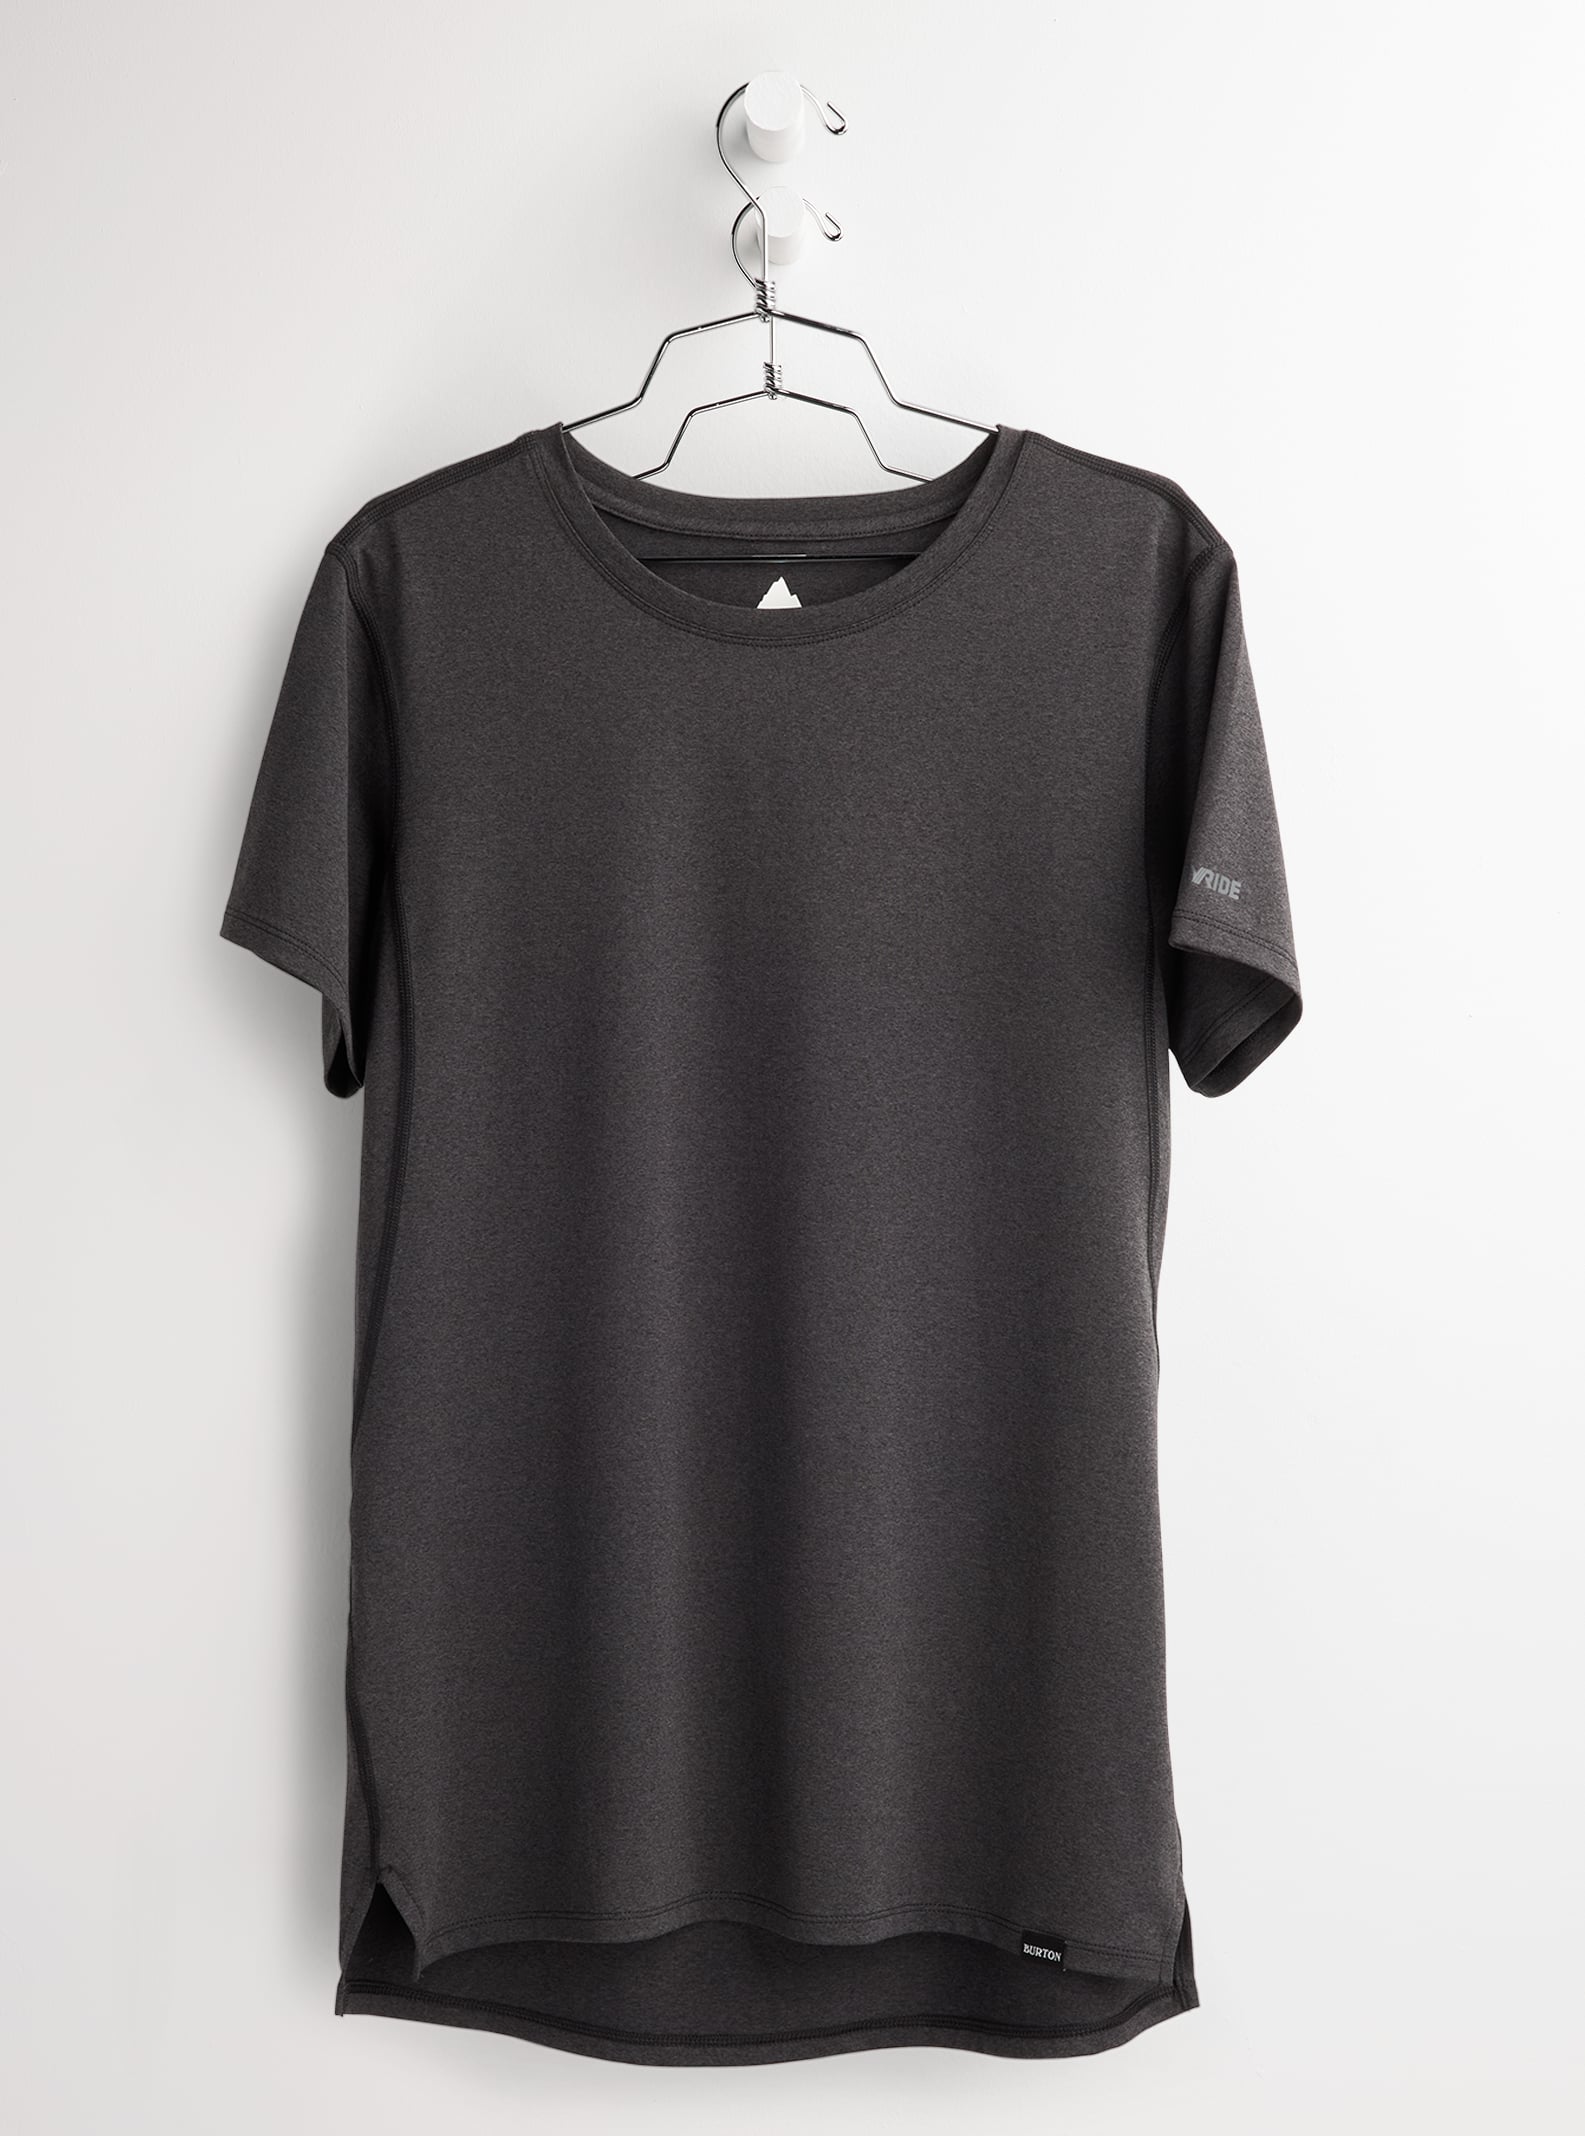 Burton - T-shirt à manches courtes Multipath Essential Tech femme, True Black Heather, L